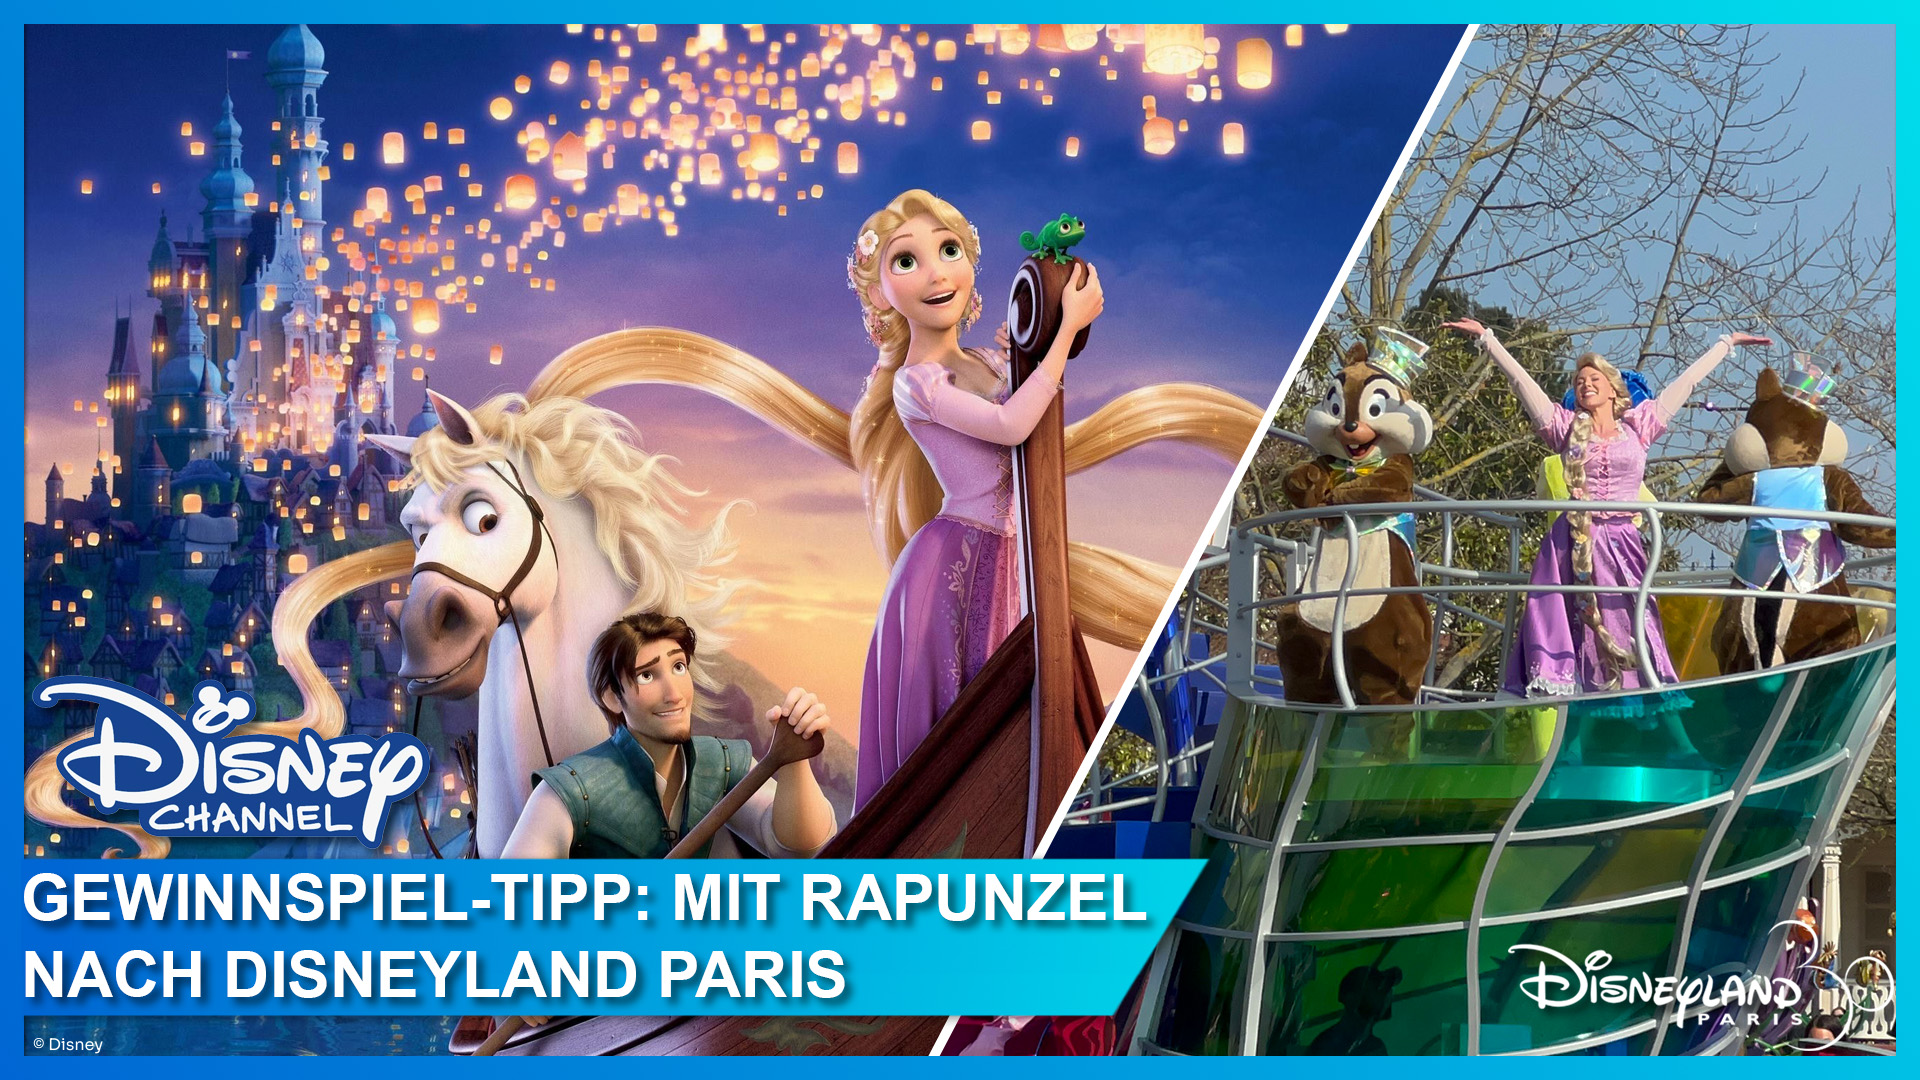 Rapunzel - Neu verföhnt im Disney Channel schauen und Traumreise nach Disneyland Paris beim großen Gewinnspiel gewinnen